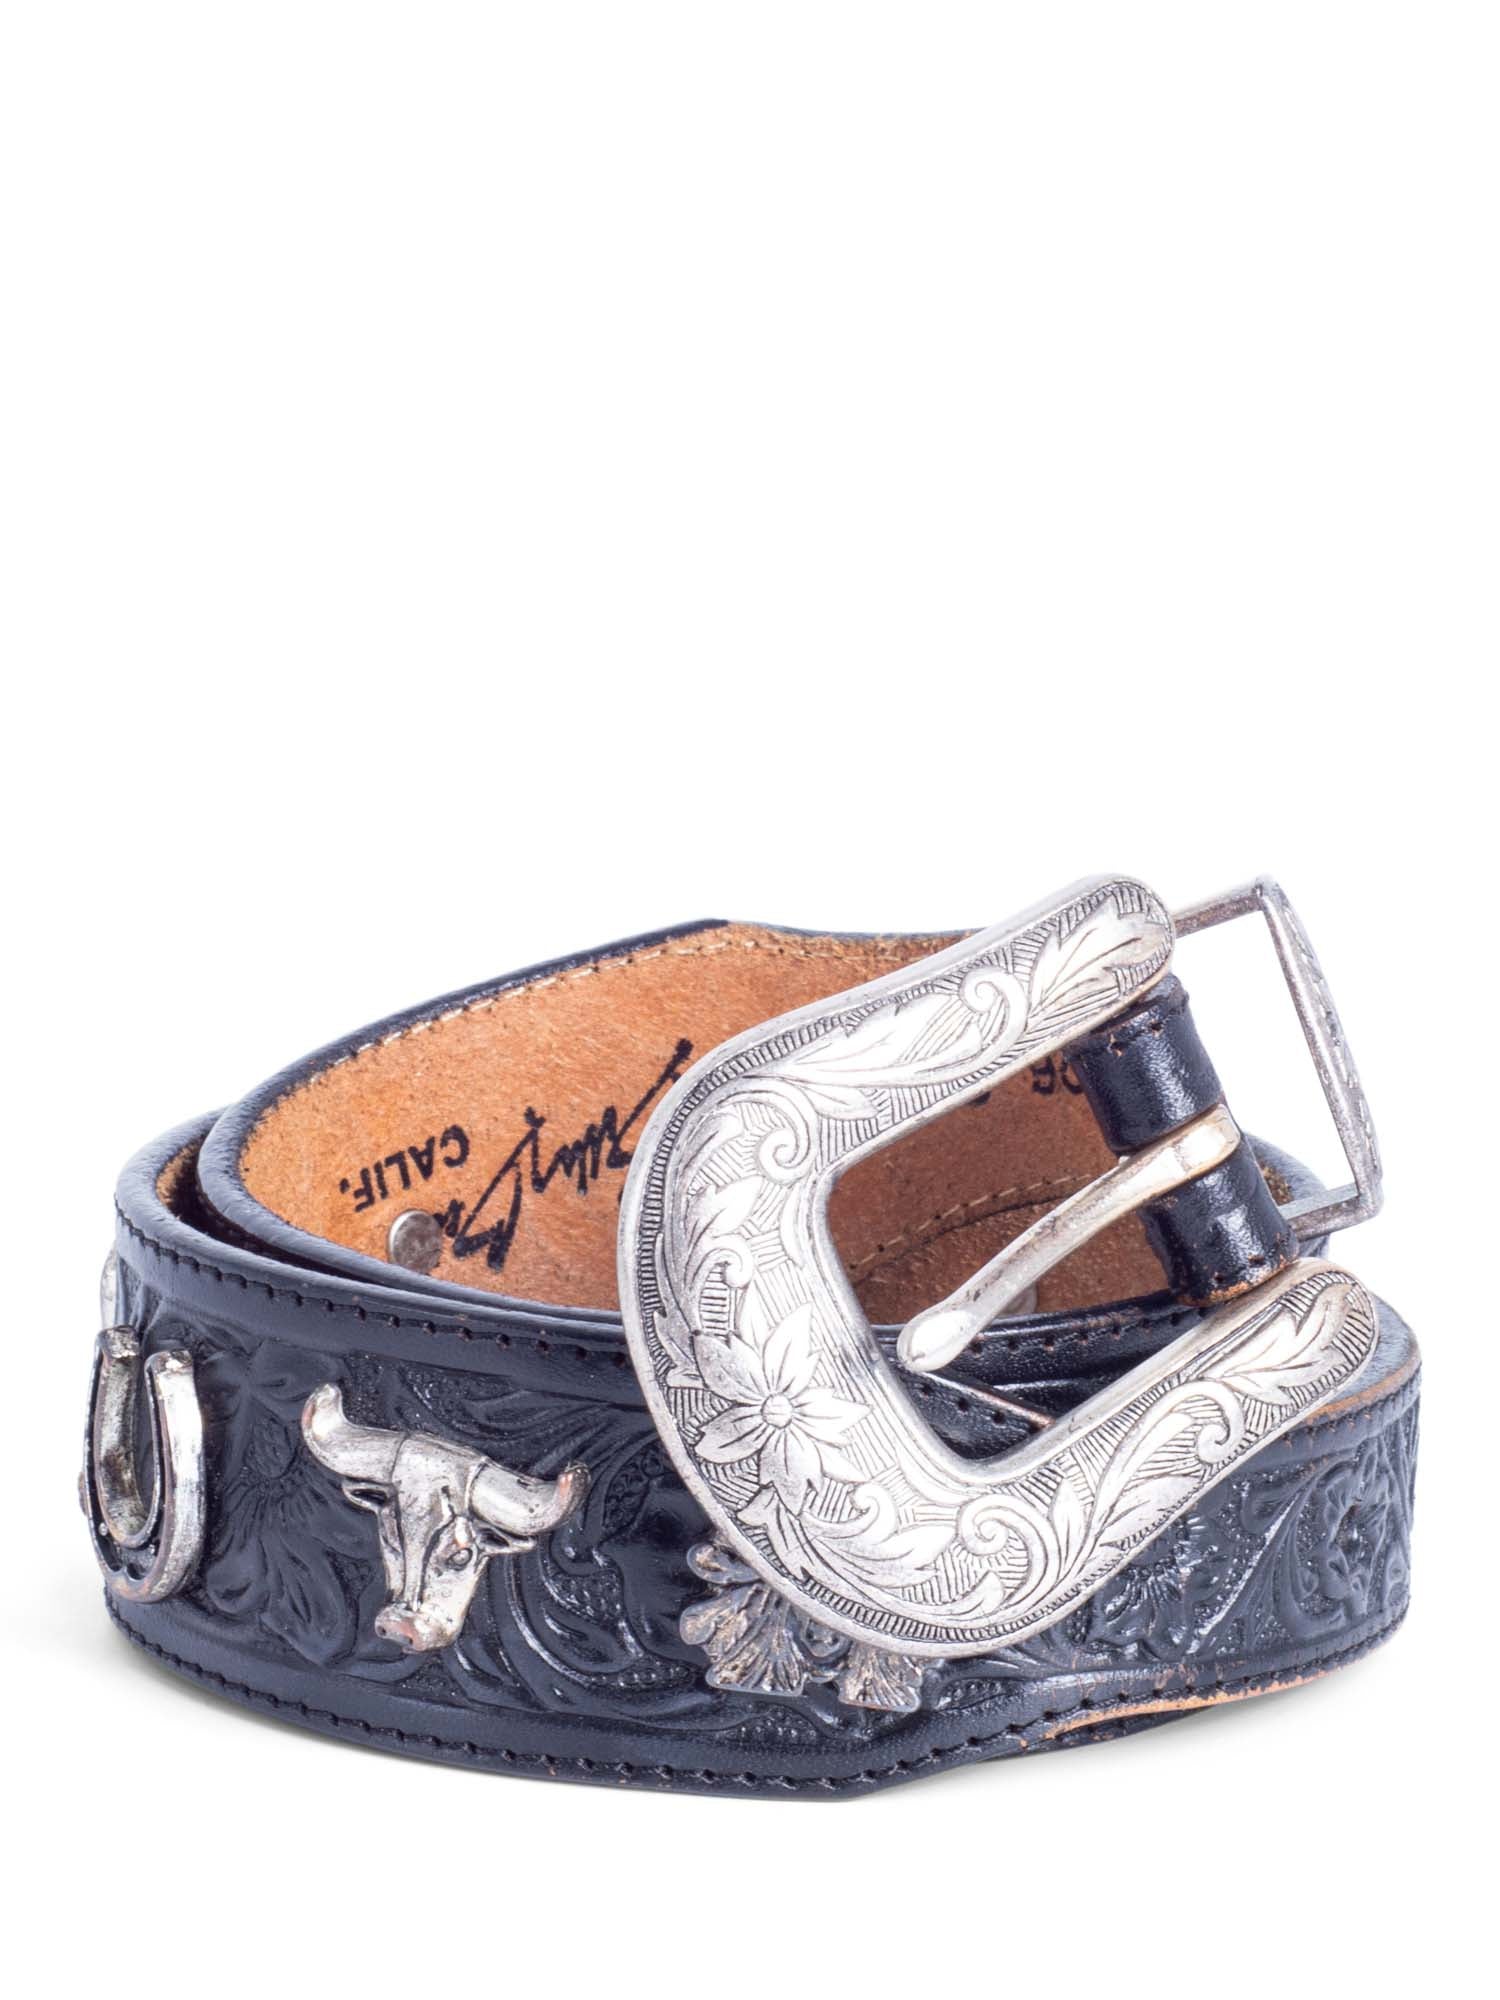 Billy Belts California Vintage Western Leather Belt Black Silver-designer resale